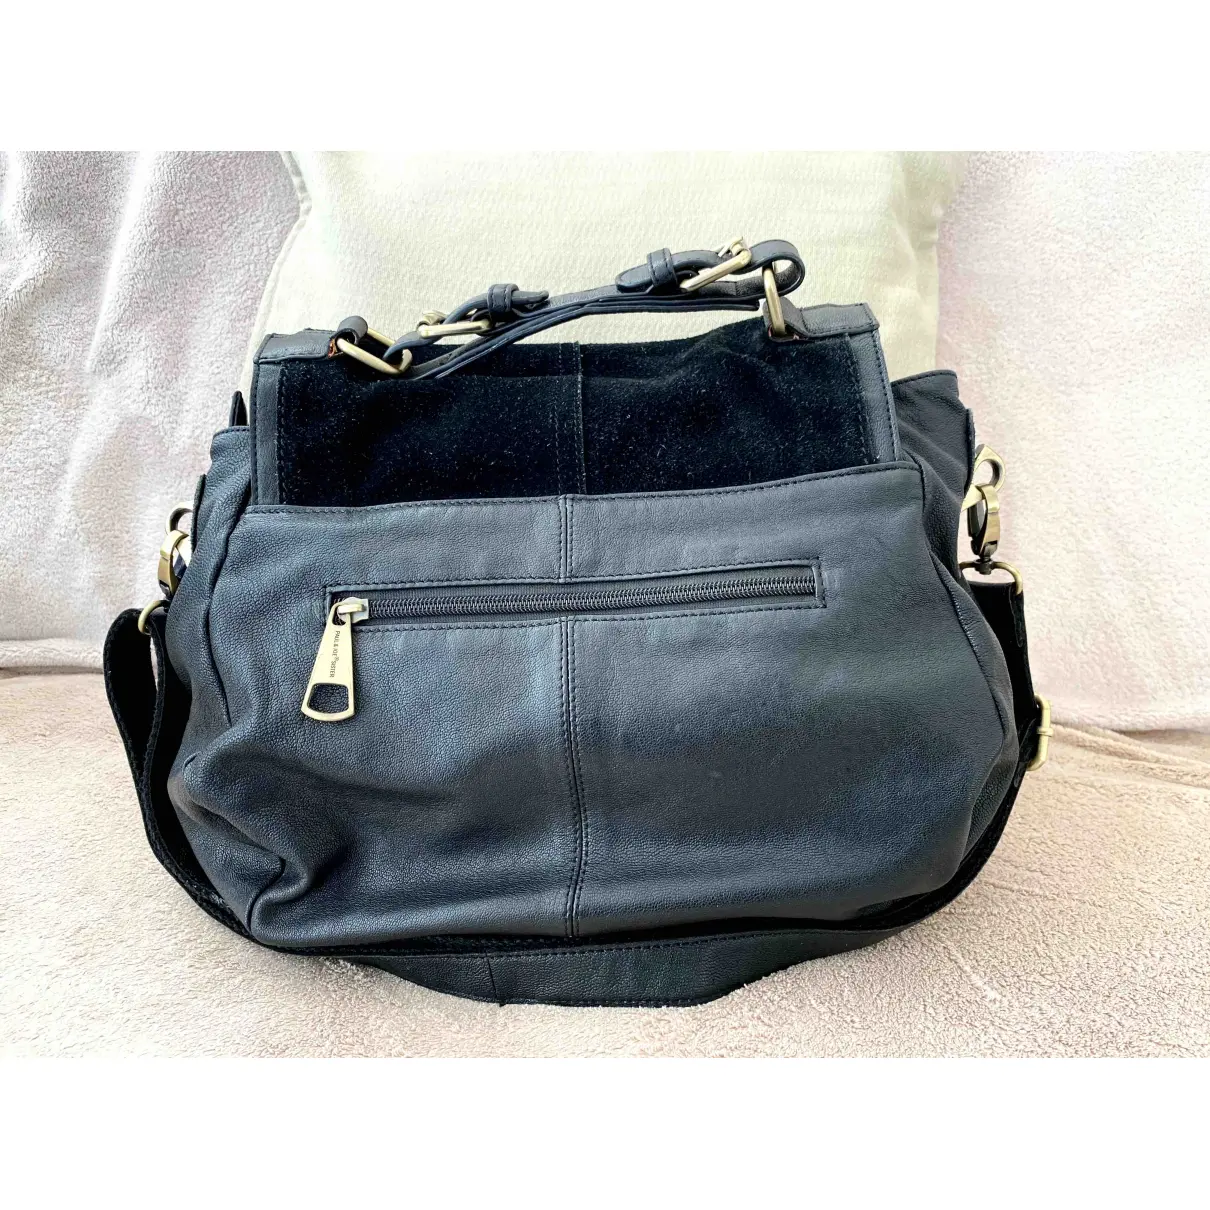 Buy Paul & Joe Sister Leather satchel online